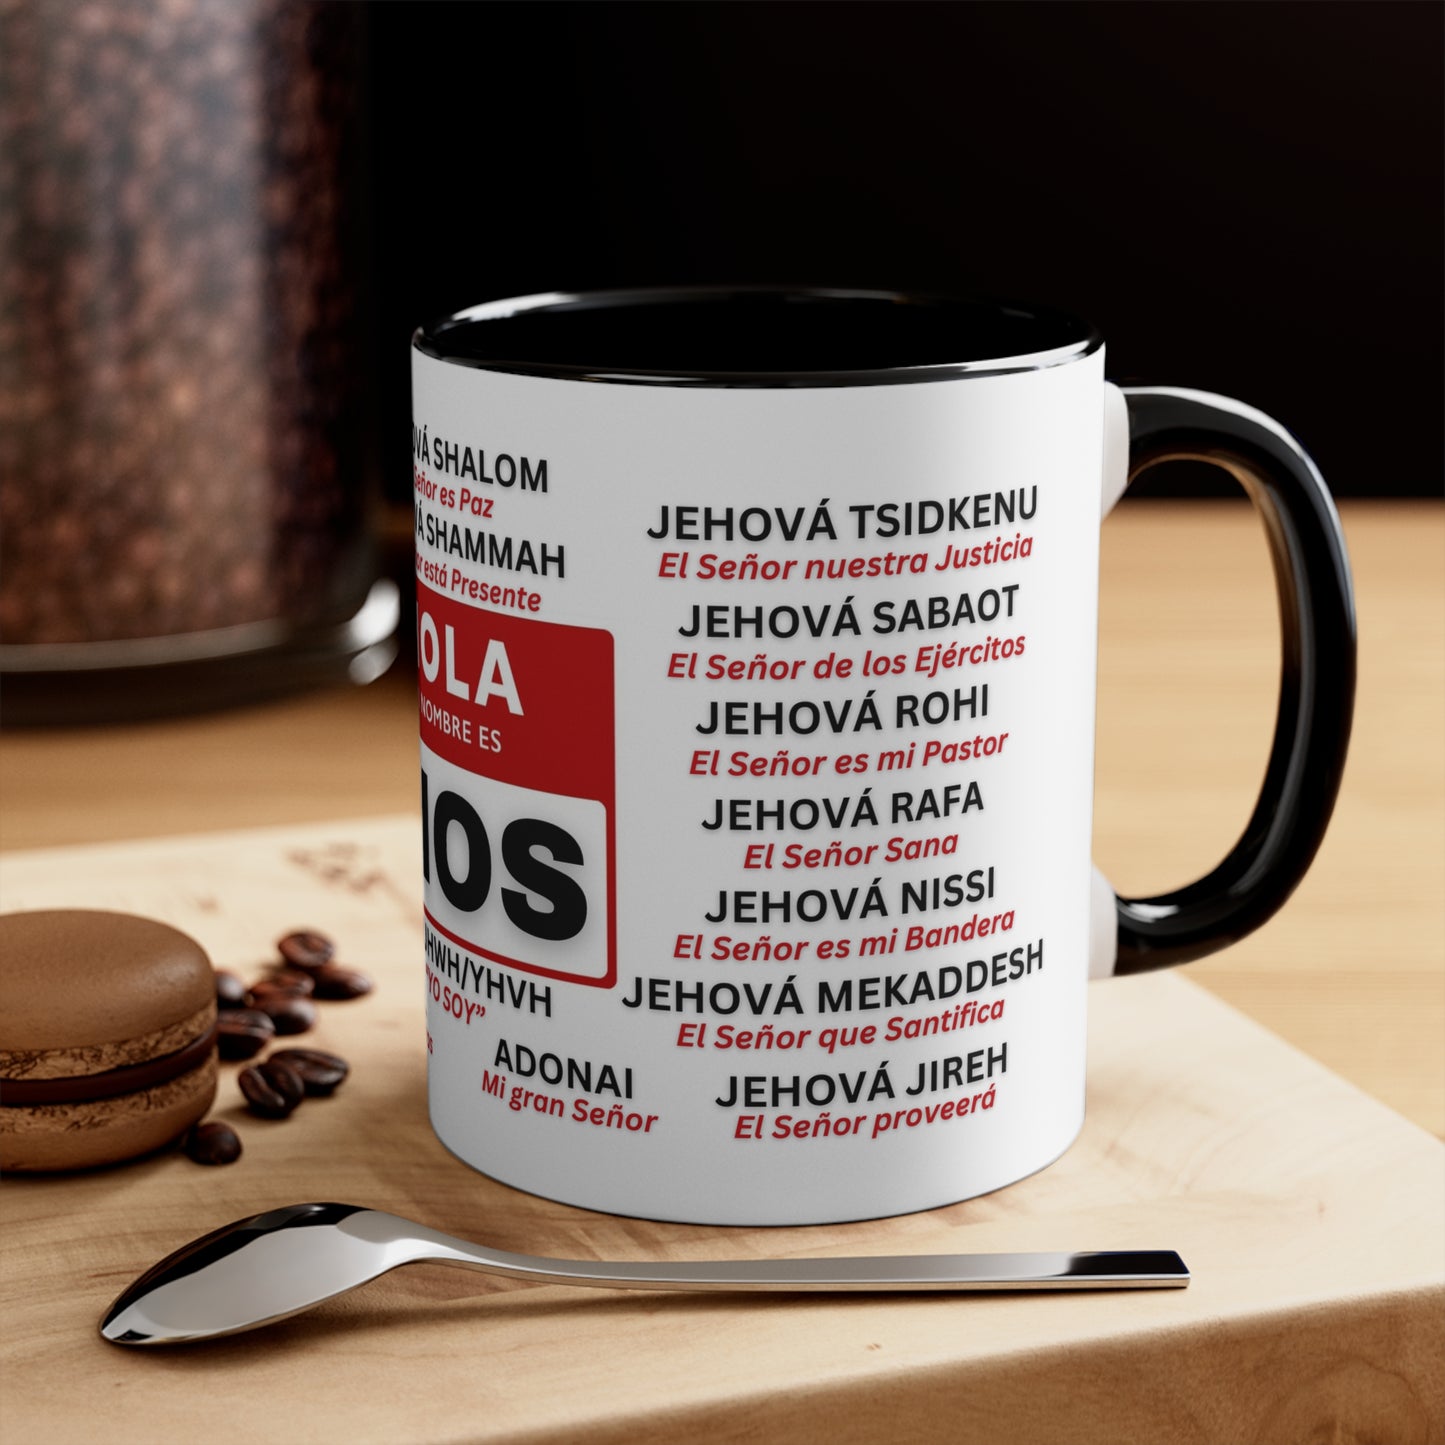 21 Nombres de Dios Significado Mug Spanish 21 Names of God Coffee Mugs Christian Religious Gifts - Black